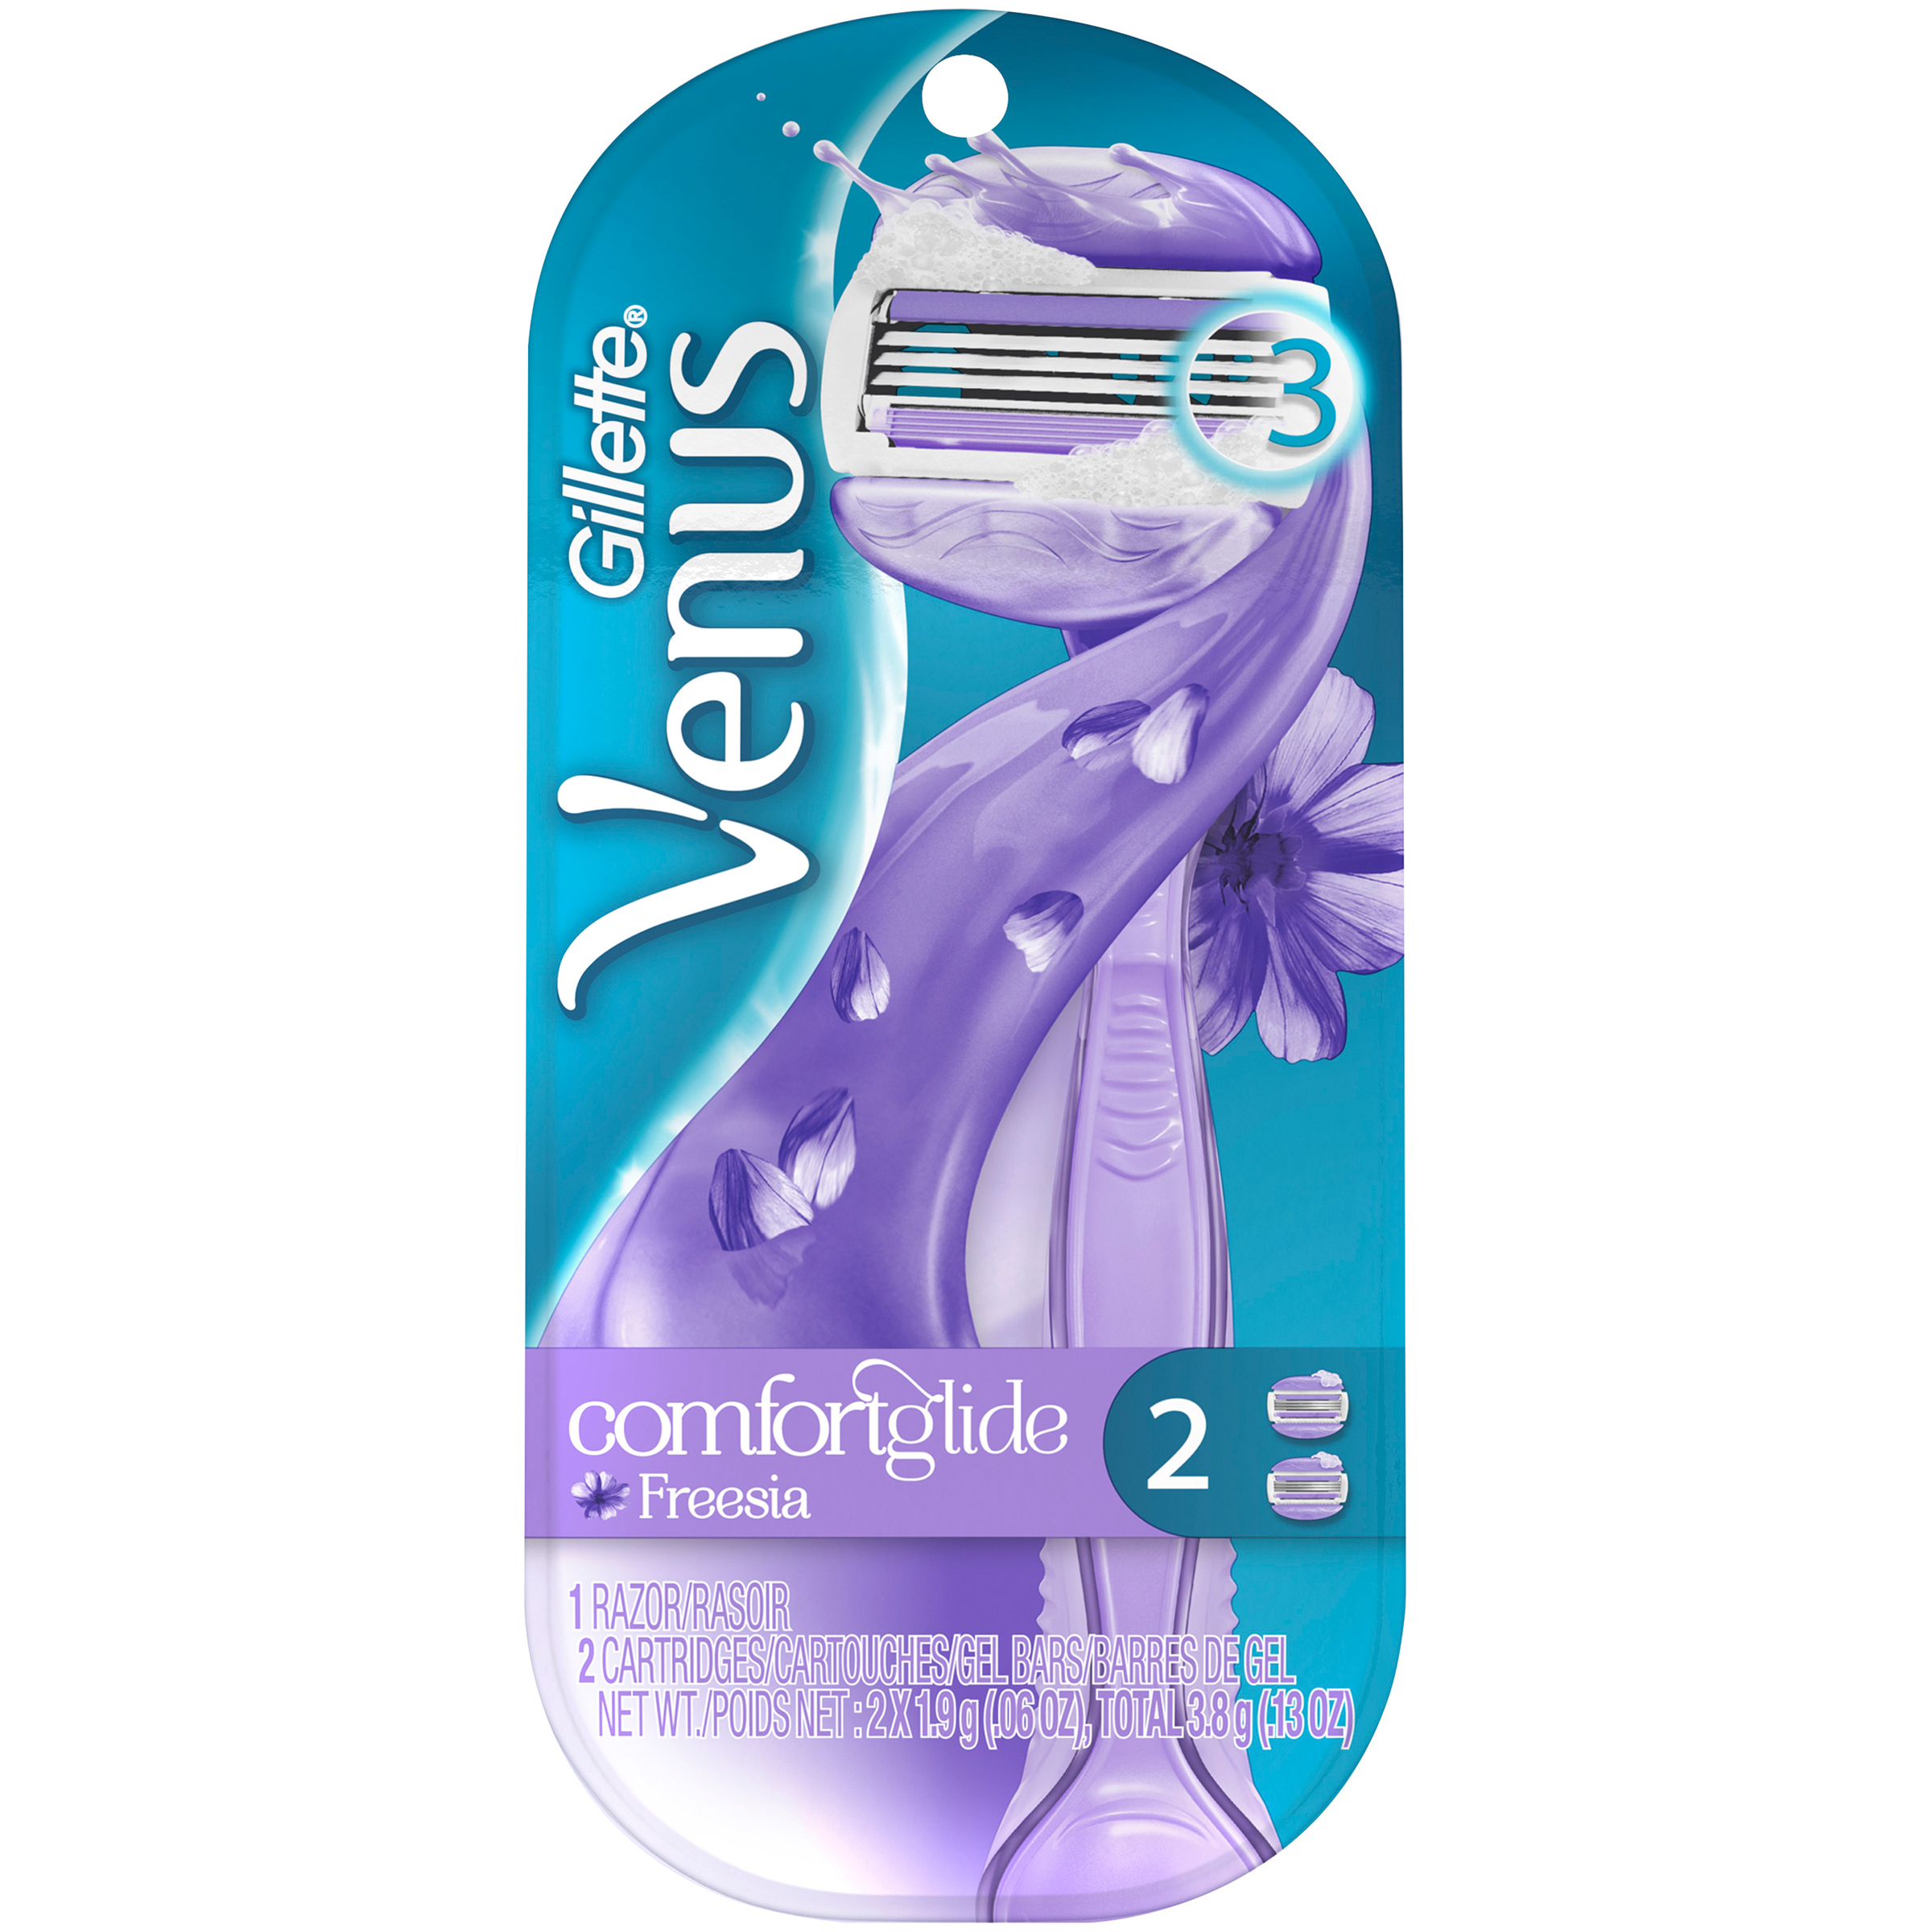 Gillette Venus 2-in-1 Razor Plus Shave Gel Bars, Breeze, 1 razor